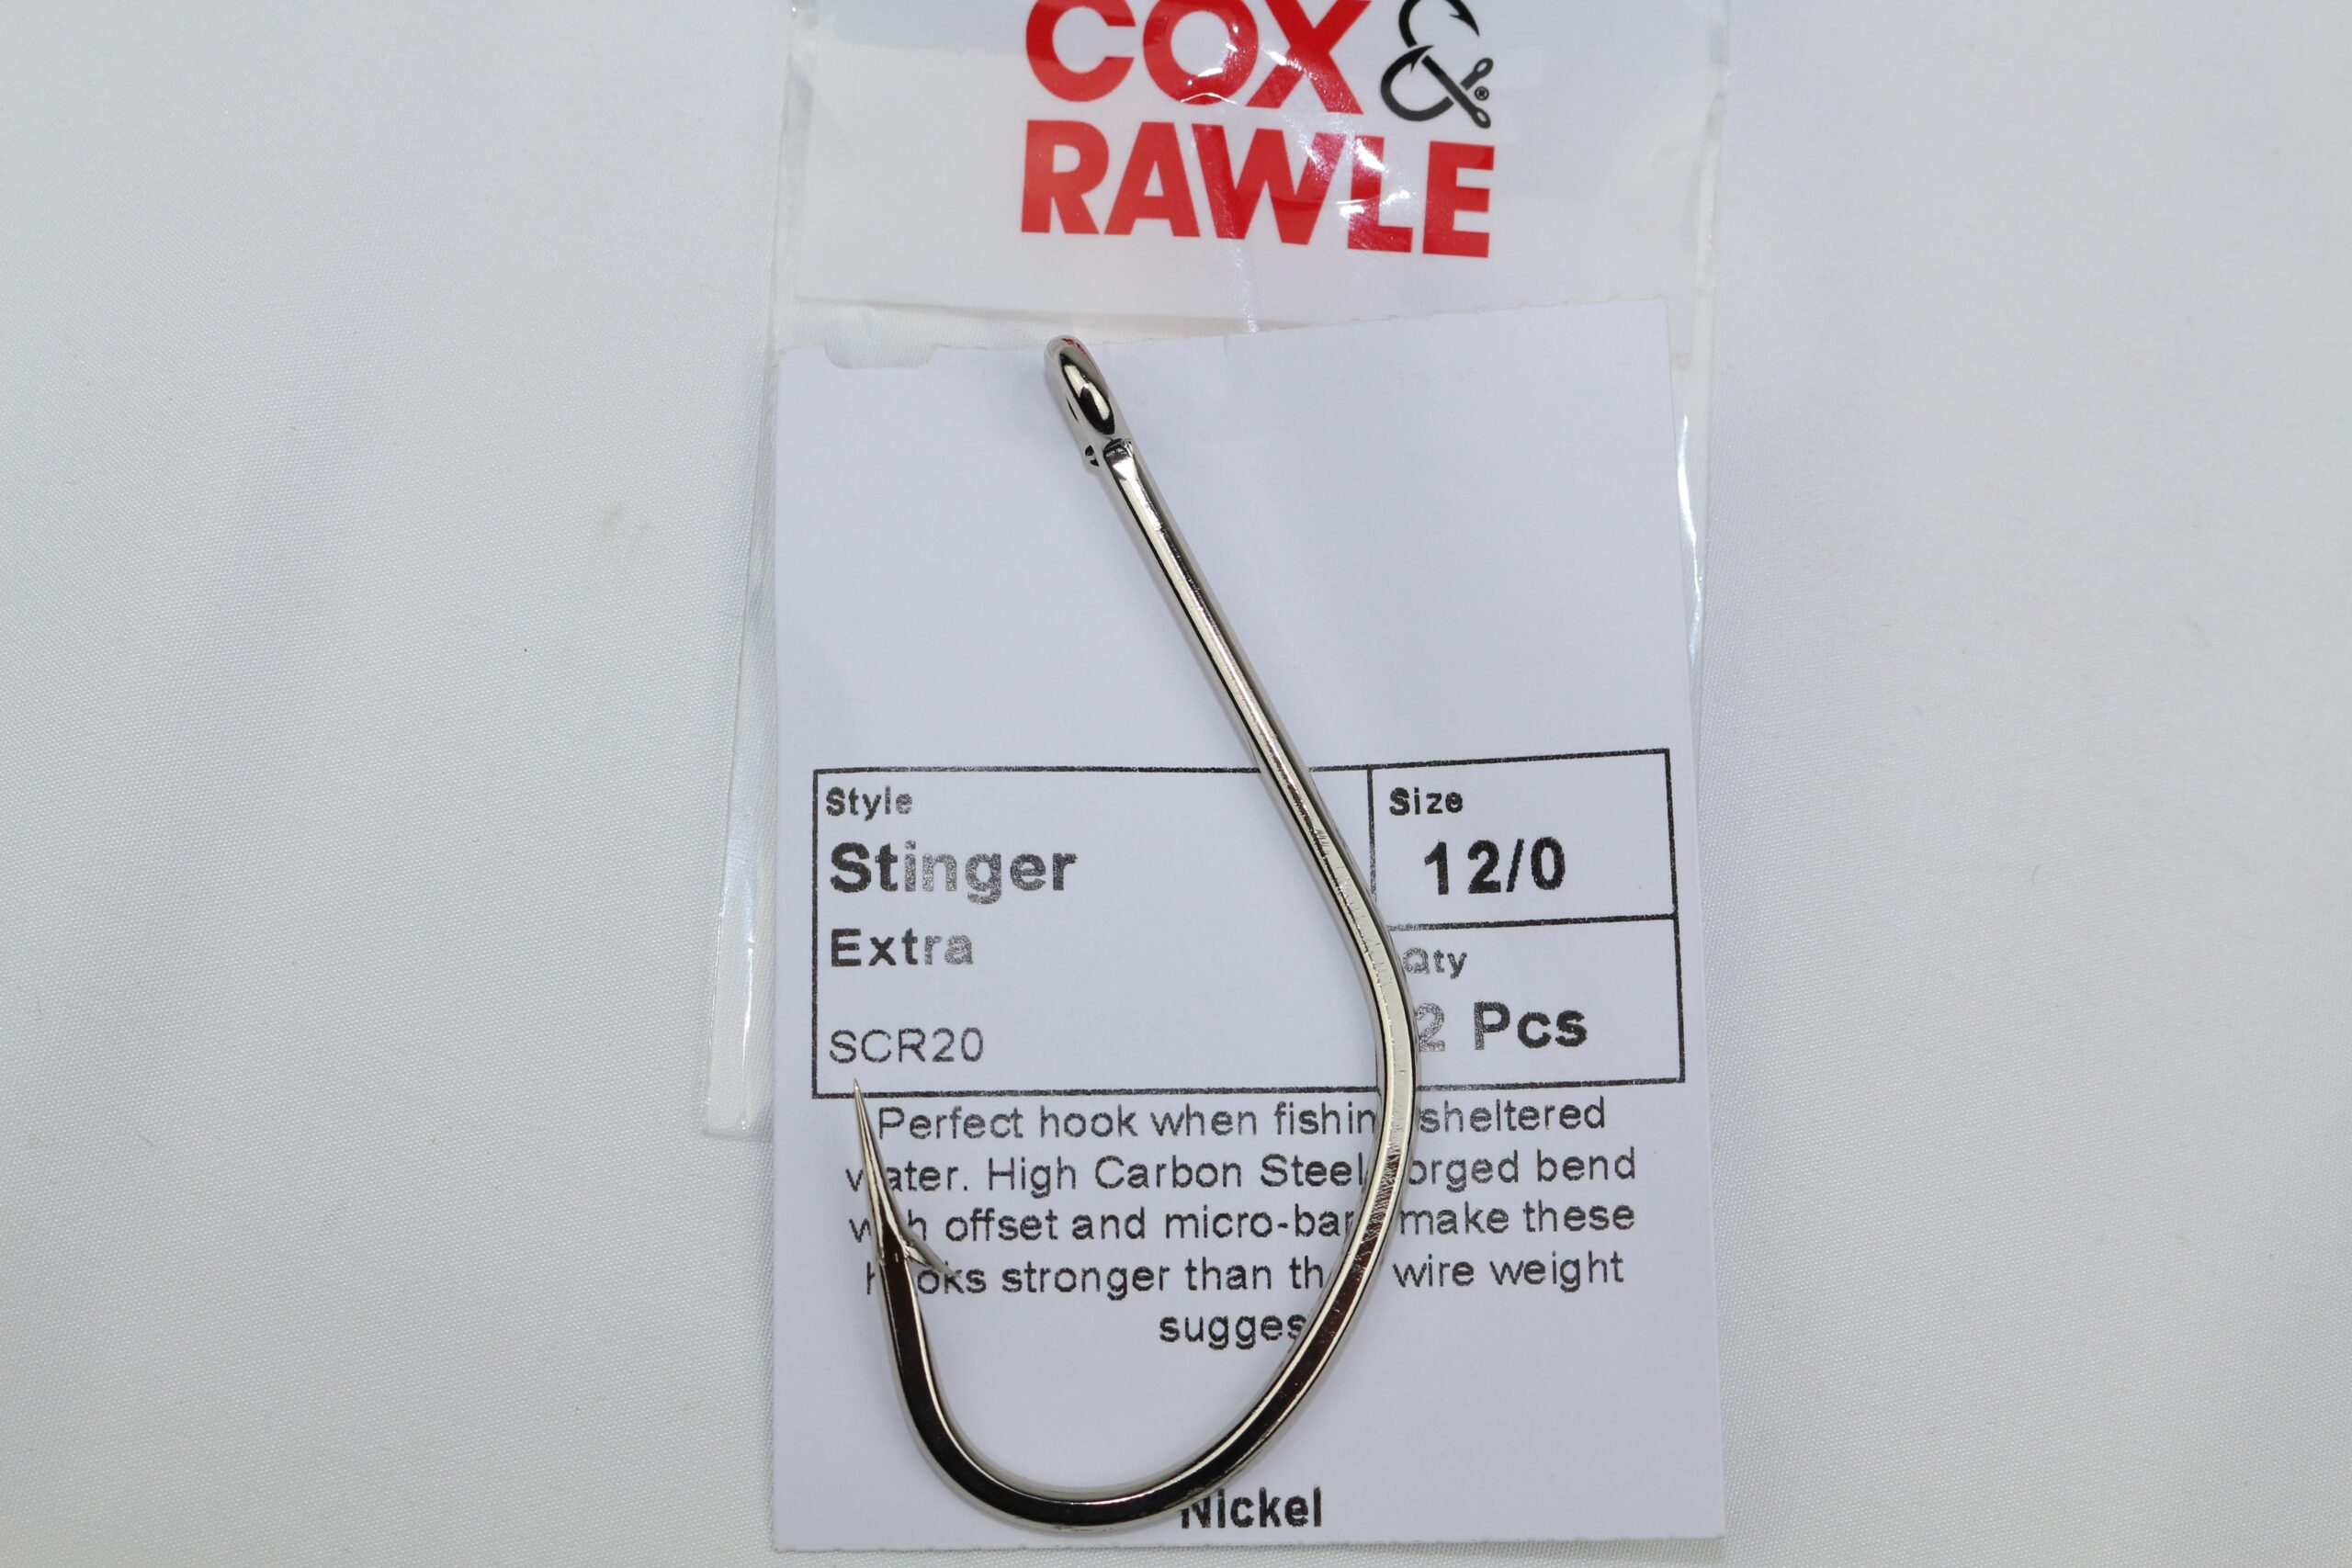 Cox & Rawle Stinger Extra Hooks Size 12/0